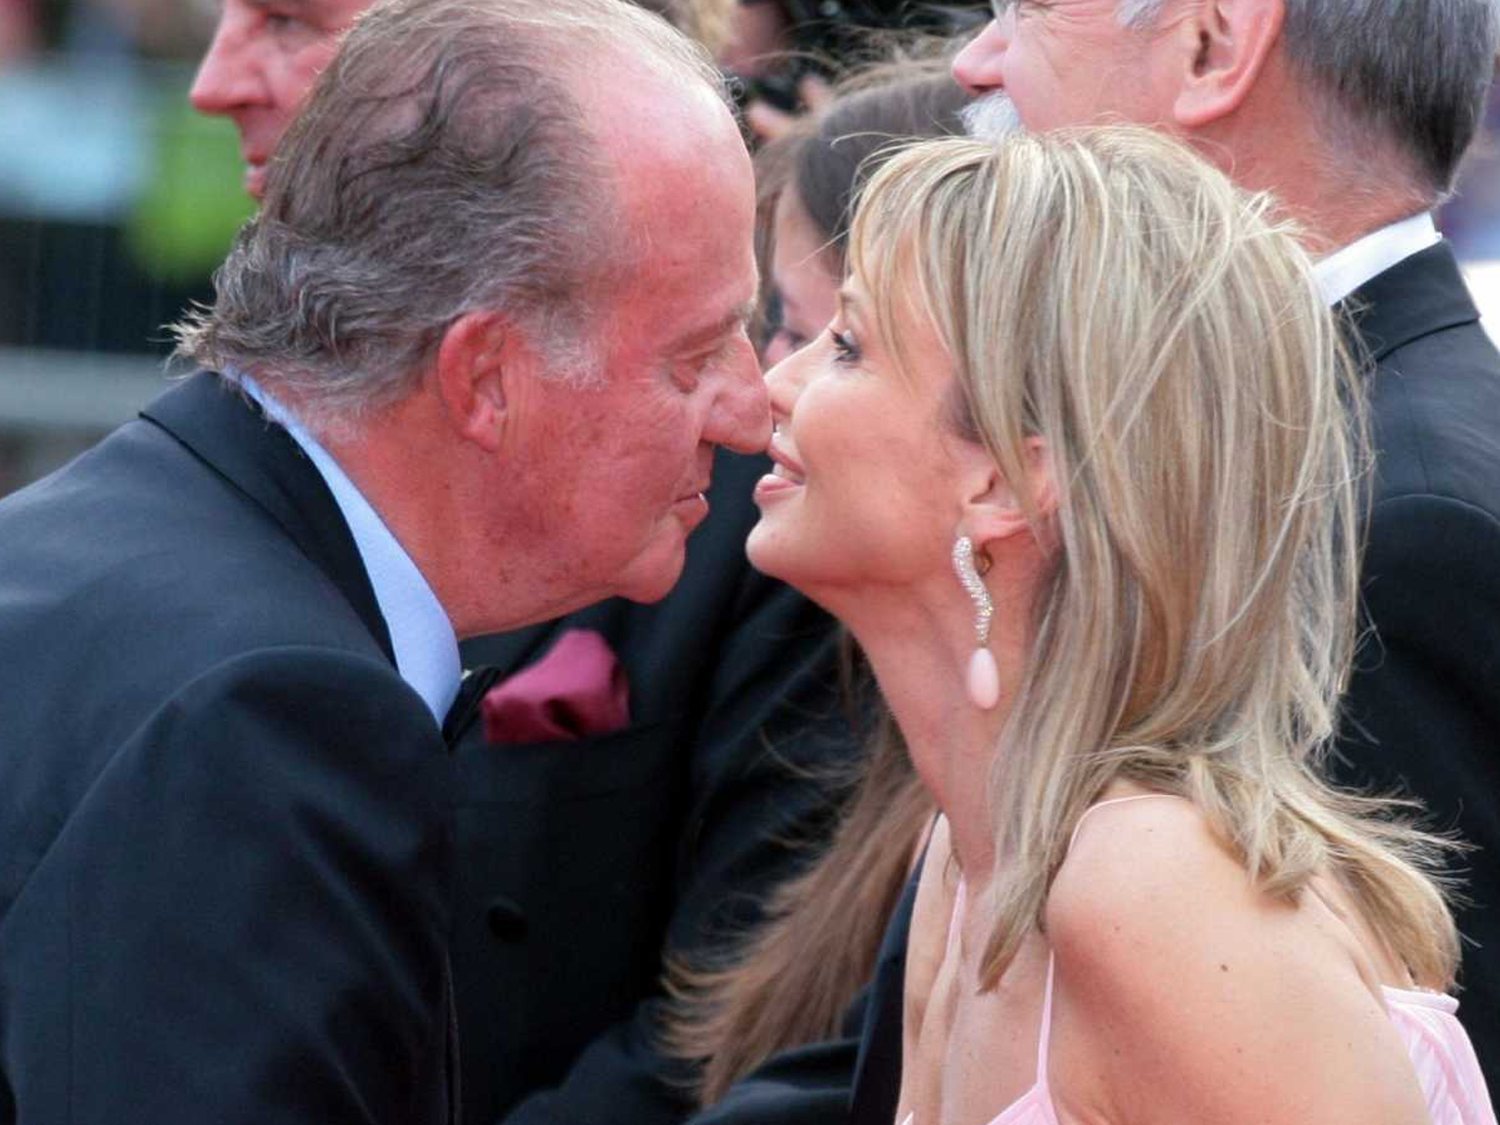 "La pasión entre el Juan Carlos y Corinna era tóxica": La confesión del primo del rey emérito